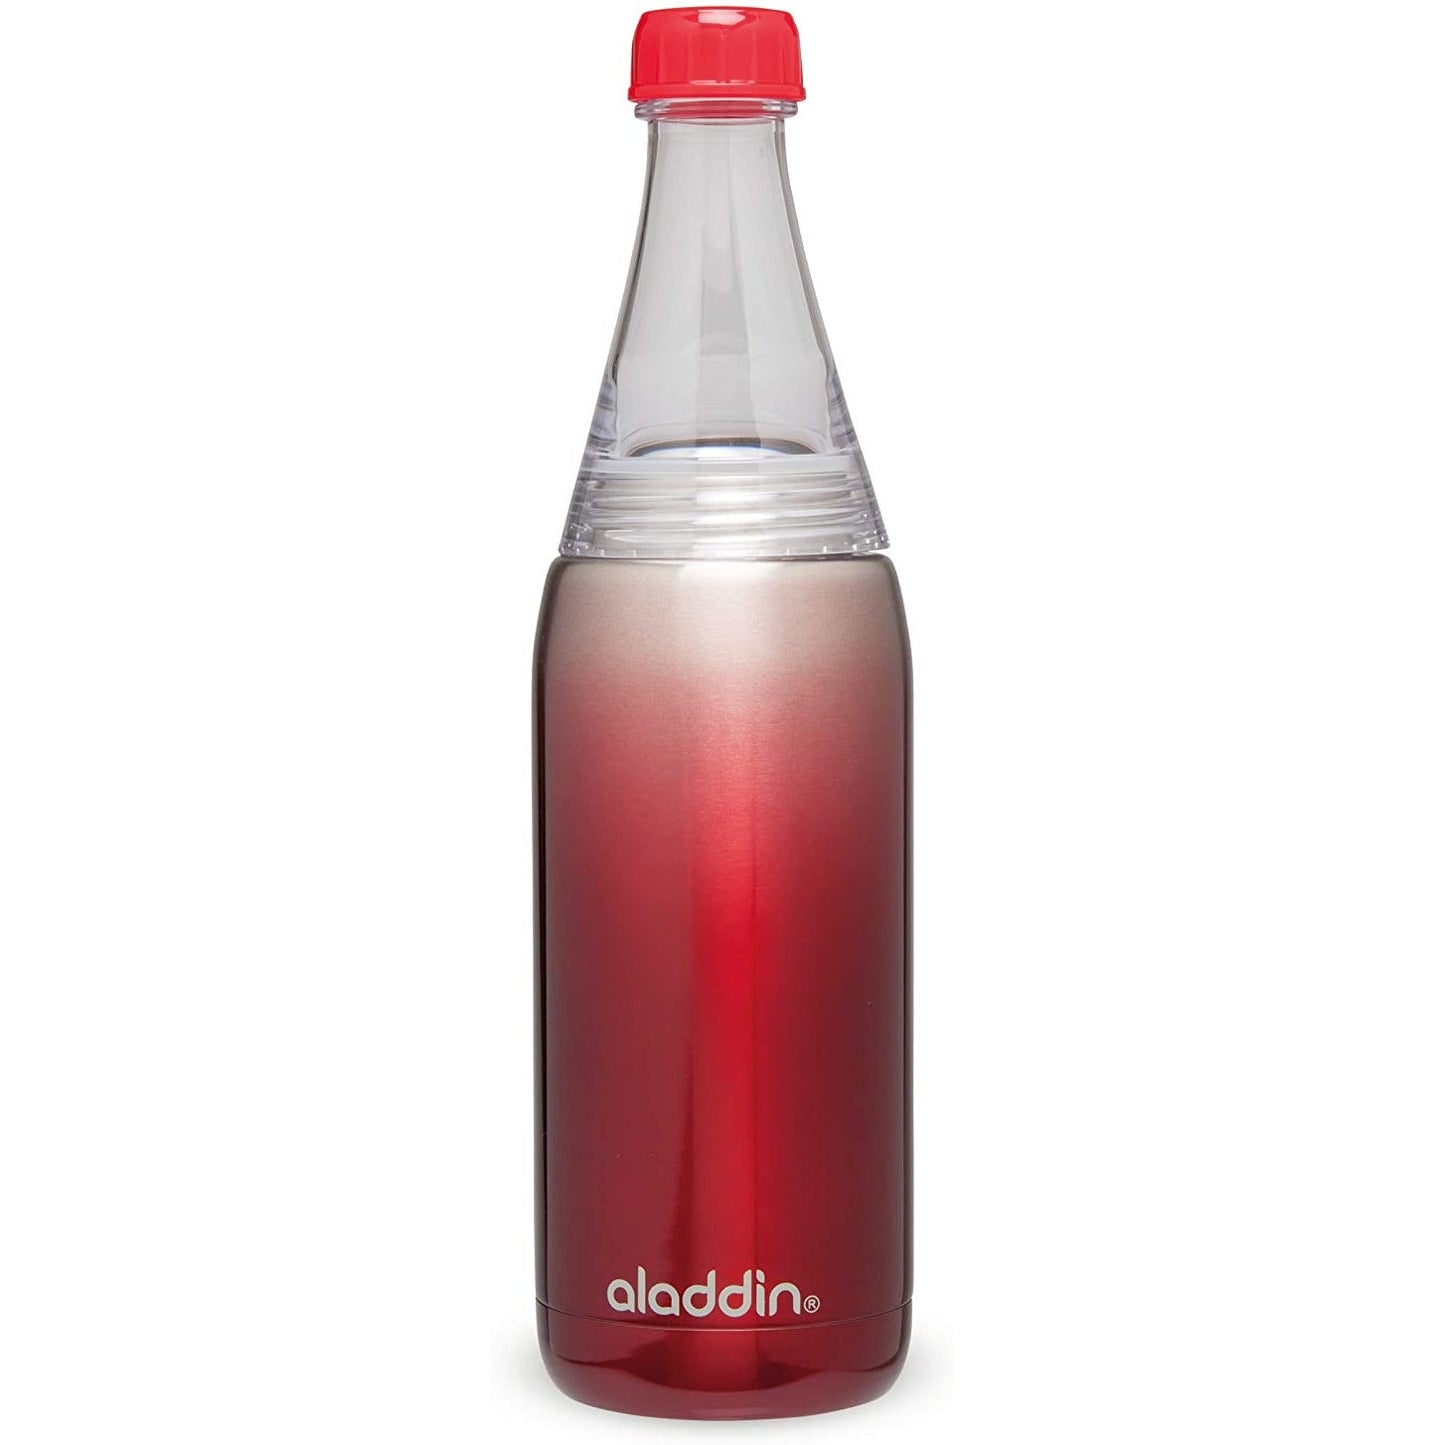 Aladdin 0.6L Bottle Shape Stainless Steel Water Bottle